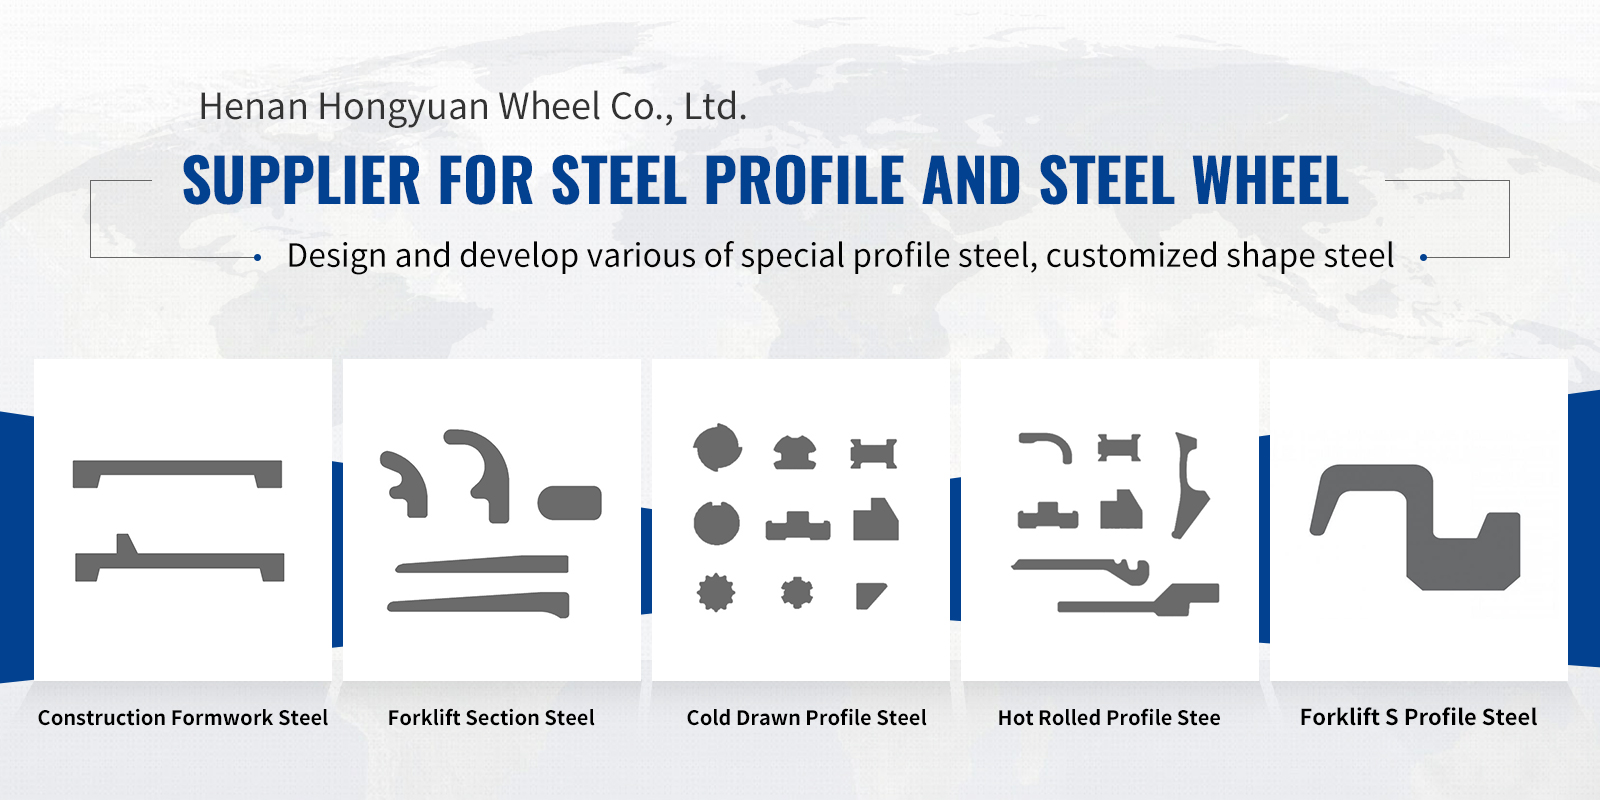 Cold Drawn Profile Steel